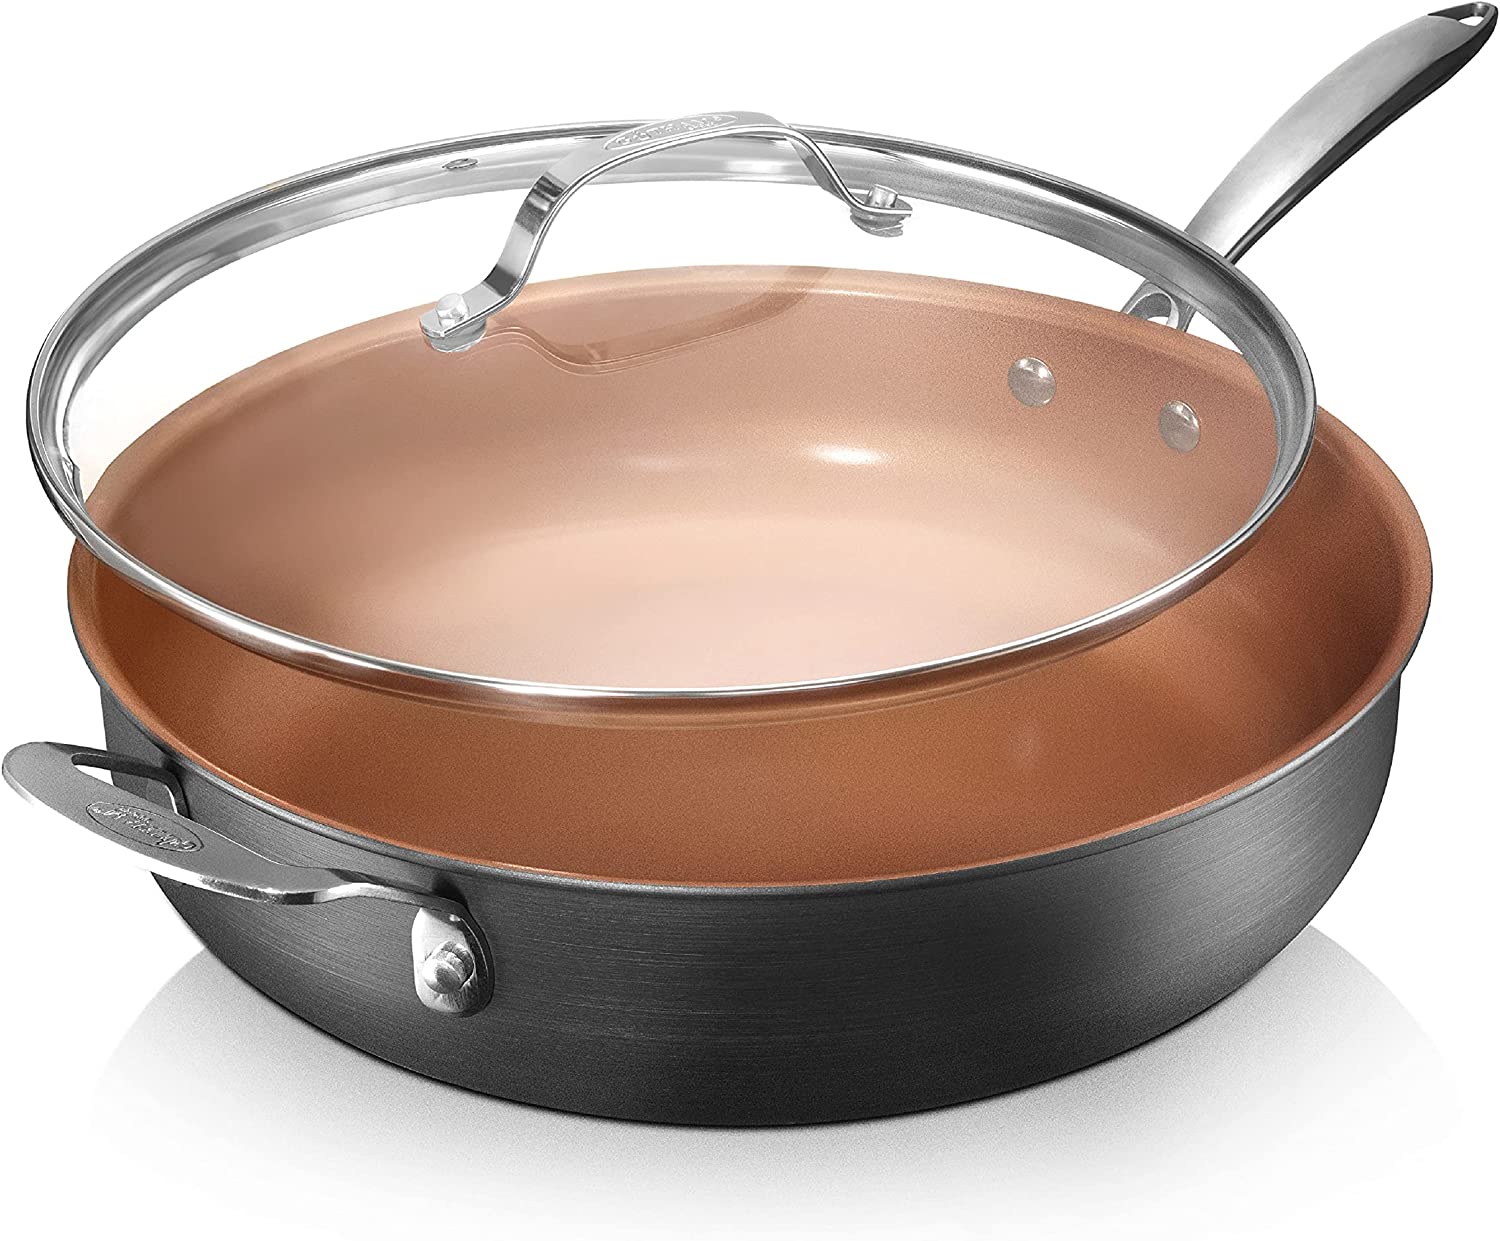 Best value ceramic non-stick pan